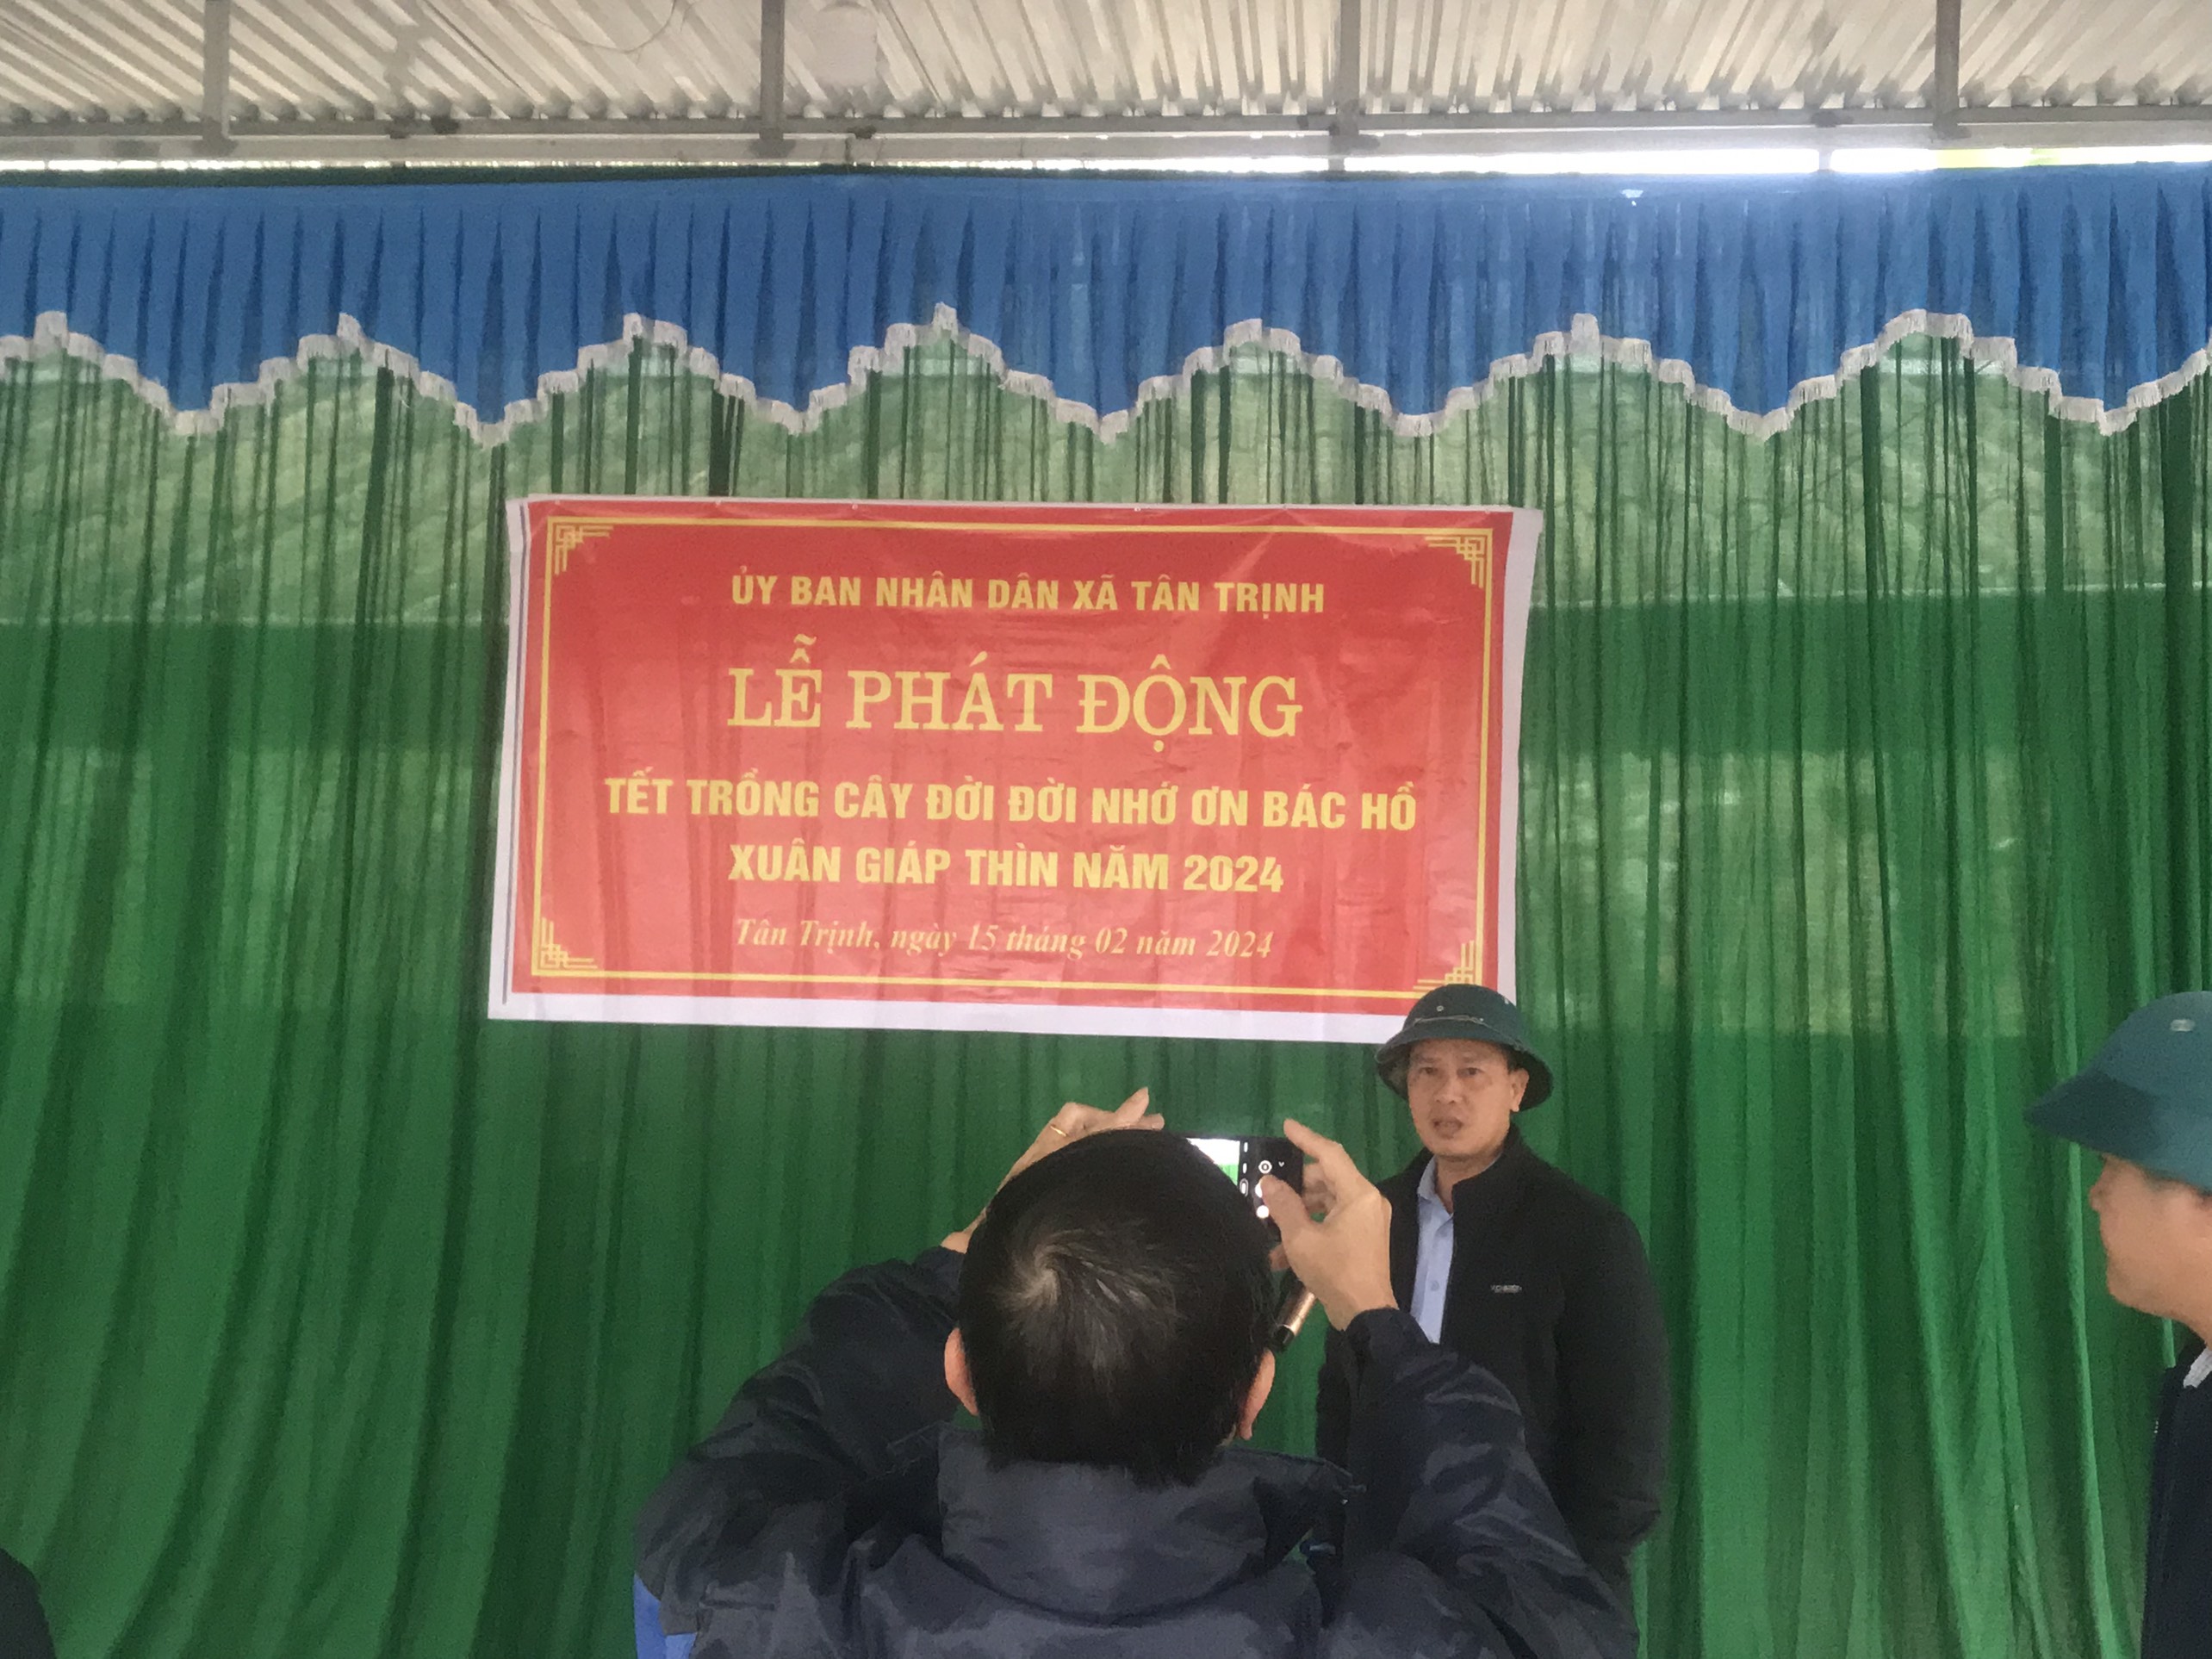 Xã Tân Trịnh tổ chức Lễ phát động “Tết trồng cây đời đời nhớ ơn Bác Hồ” Xuân Giáp Thìn năm 2024